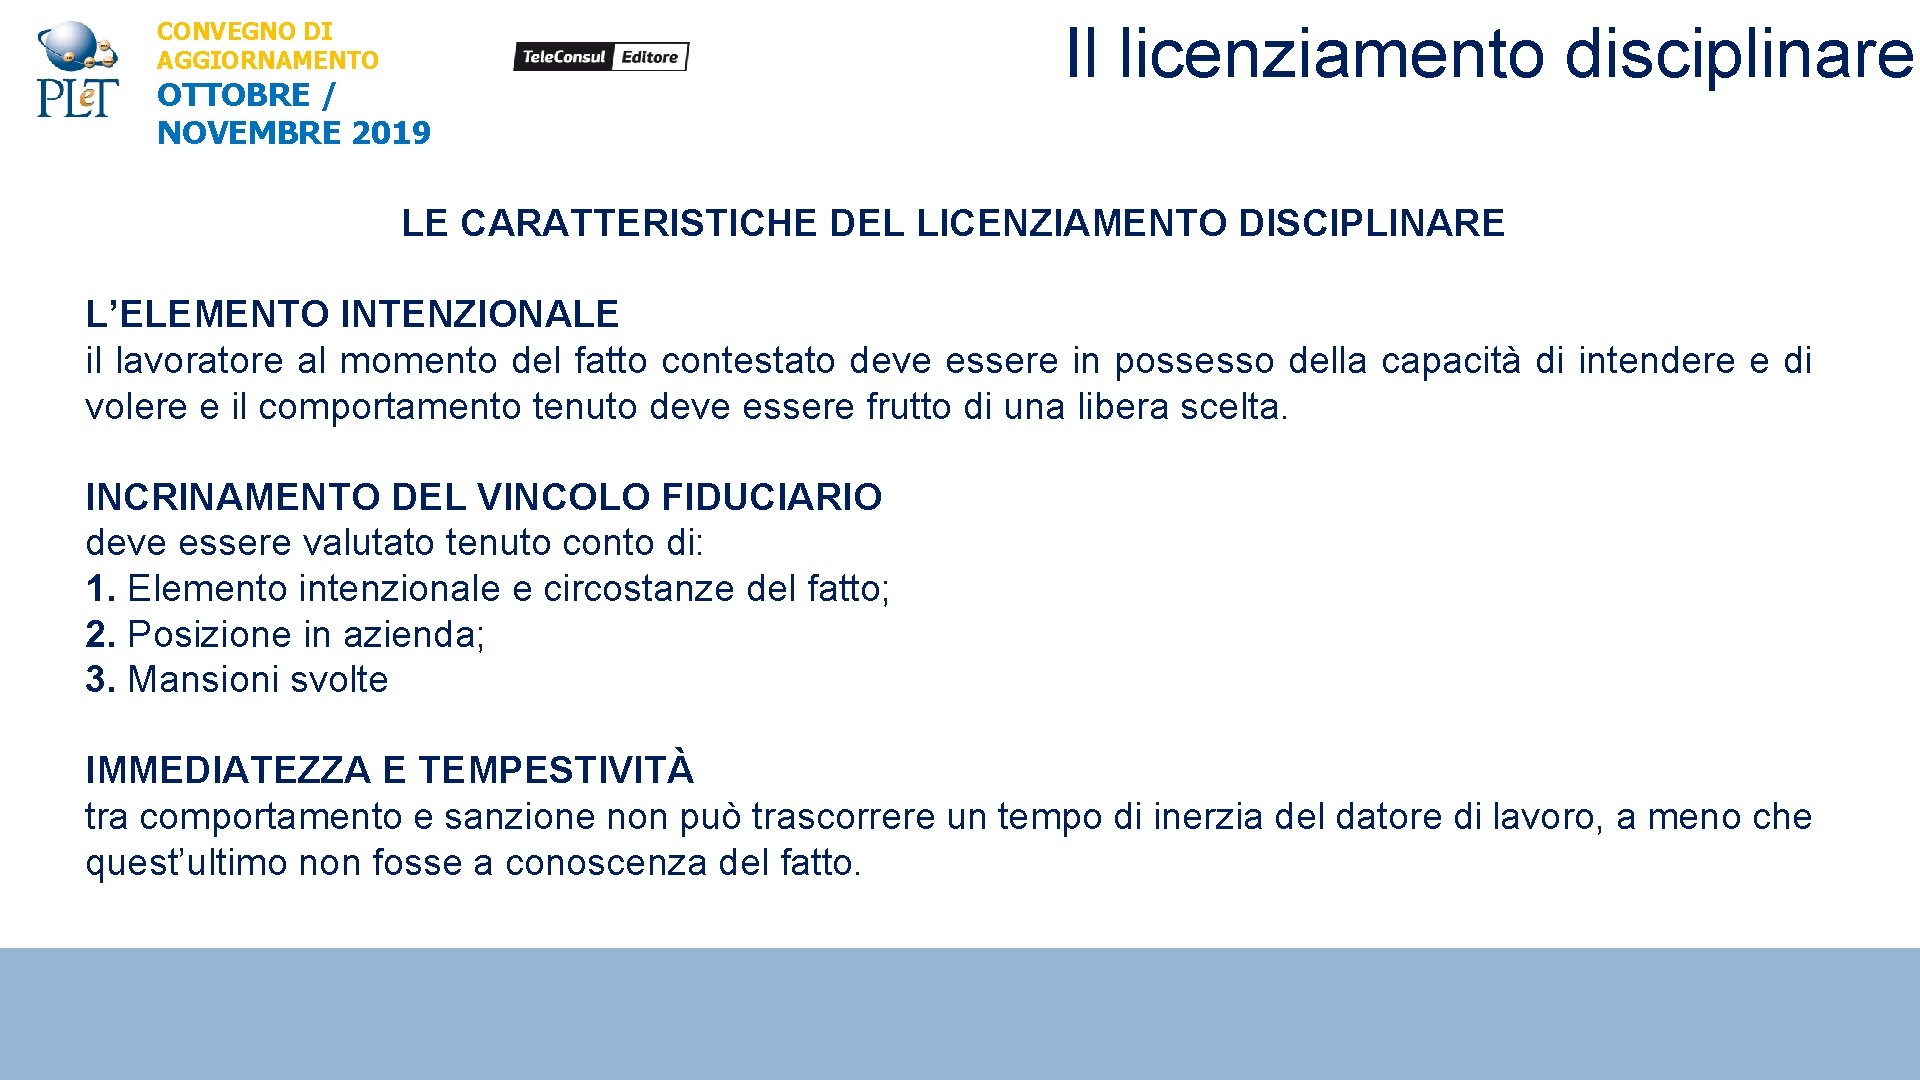 CONVEGNO DI AGGIORNAMENTO OTTOBRE / NOVEMBRE 2019 Il licenziamento disciplinare LE CARATTERISTICHE DEL LICENZIAMENTO